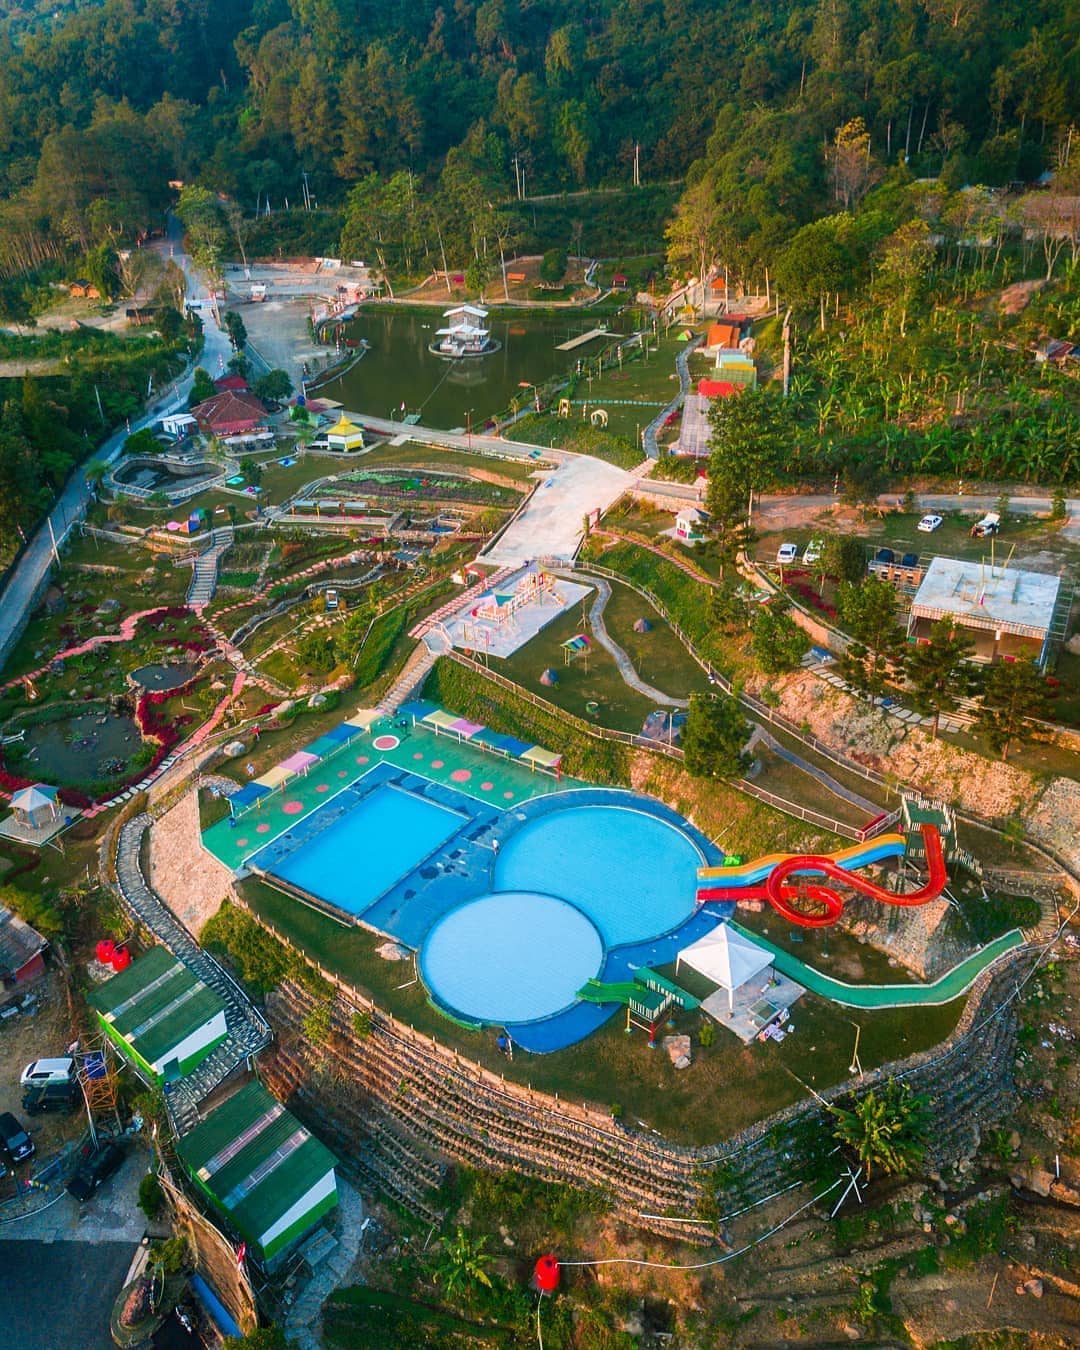 Nirvana Valley Resort Bogor